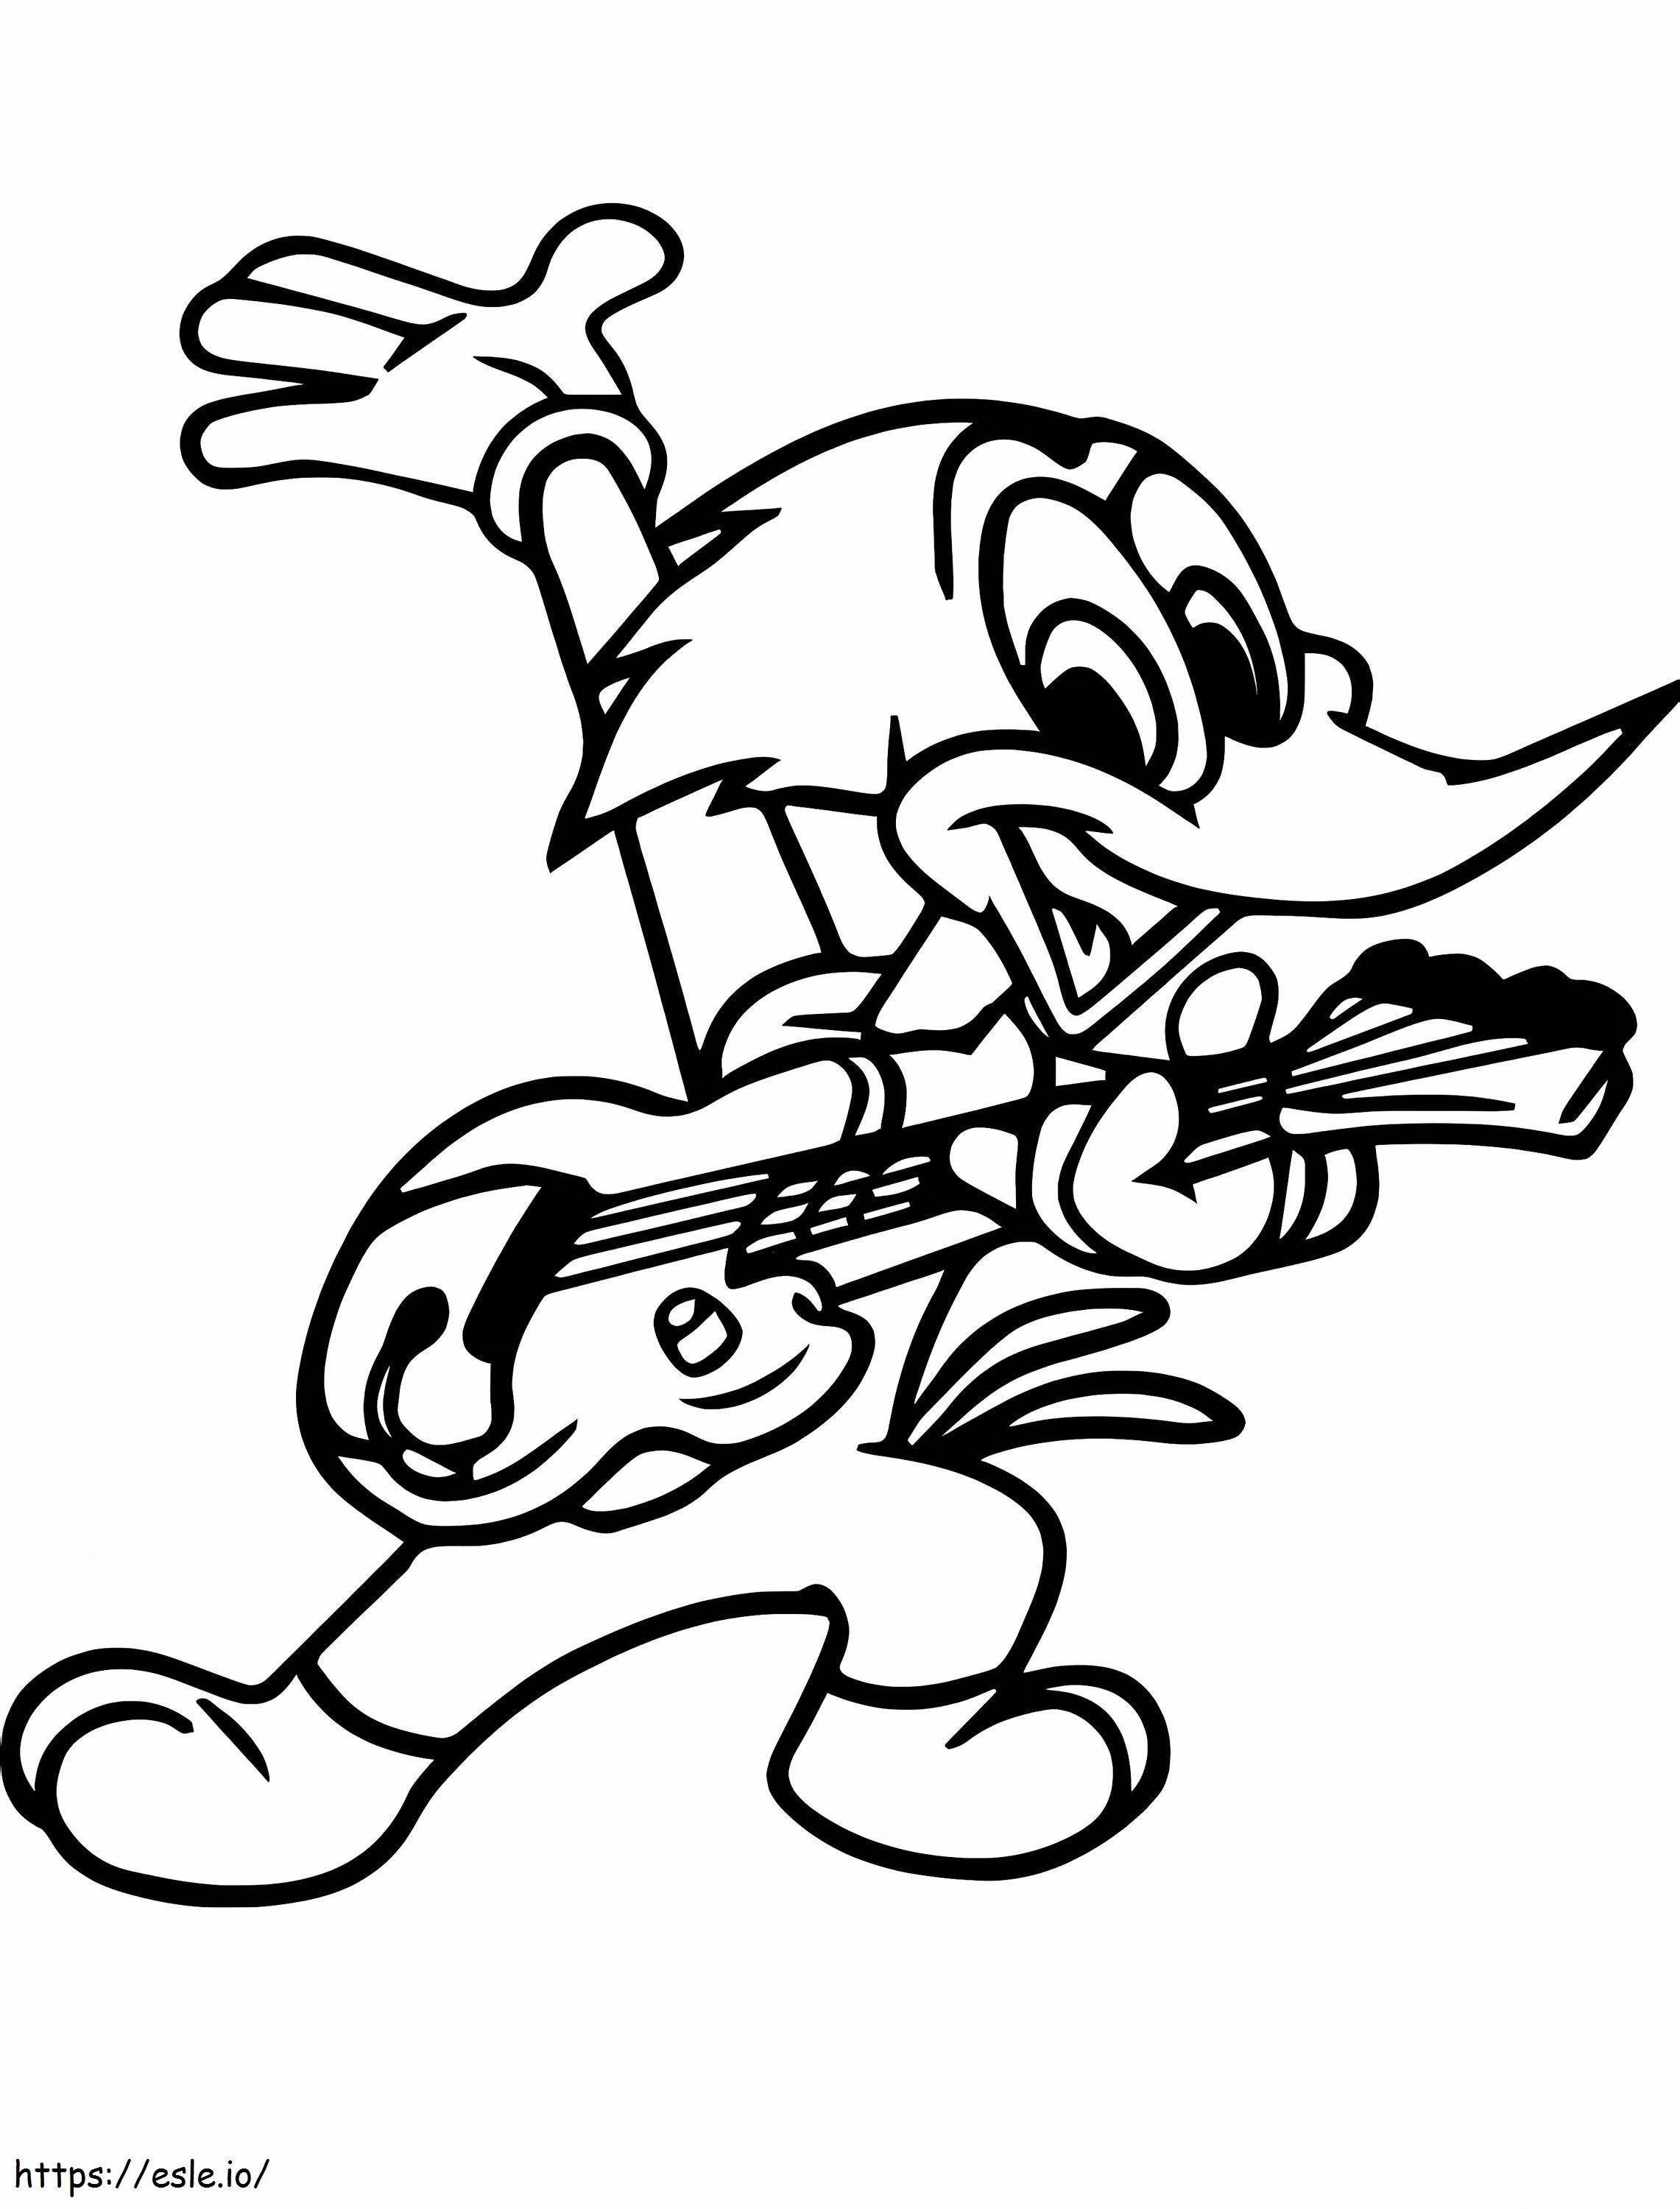 Woody Woodpecker spielt Gitarre ausmalbilder